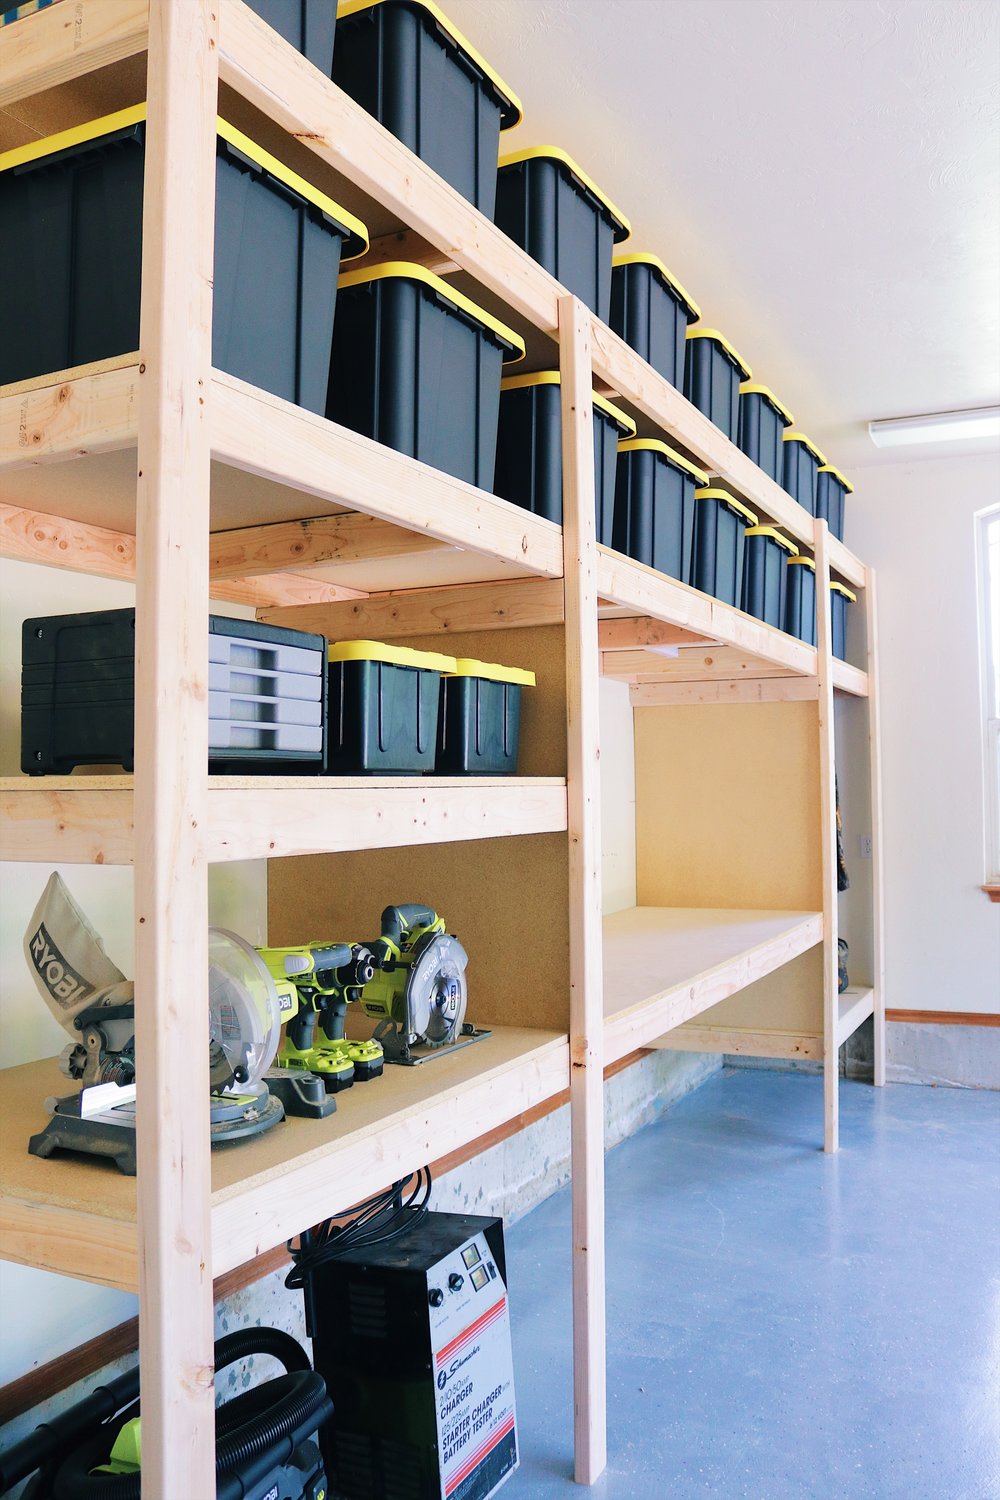 Diy Garage Shelves Modern Builds, Plans For Building Garage Storage Shelves